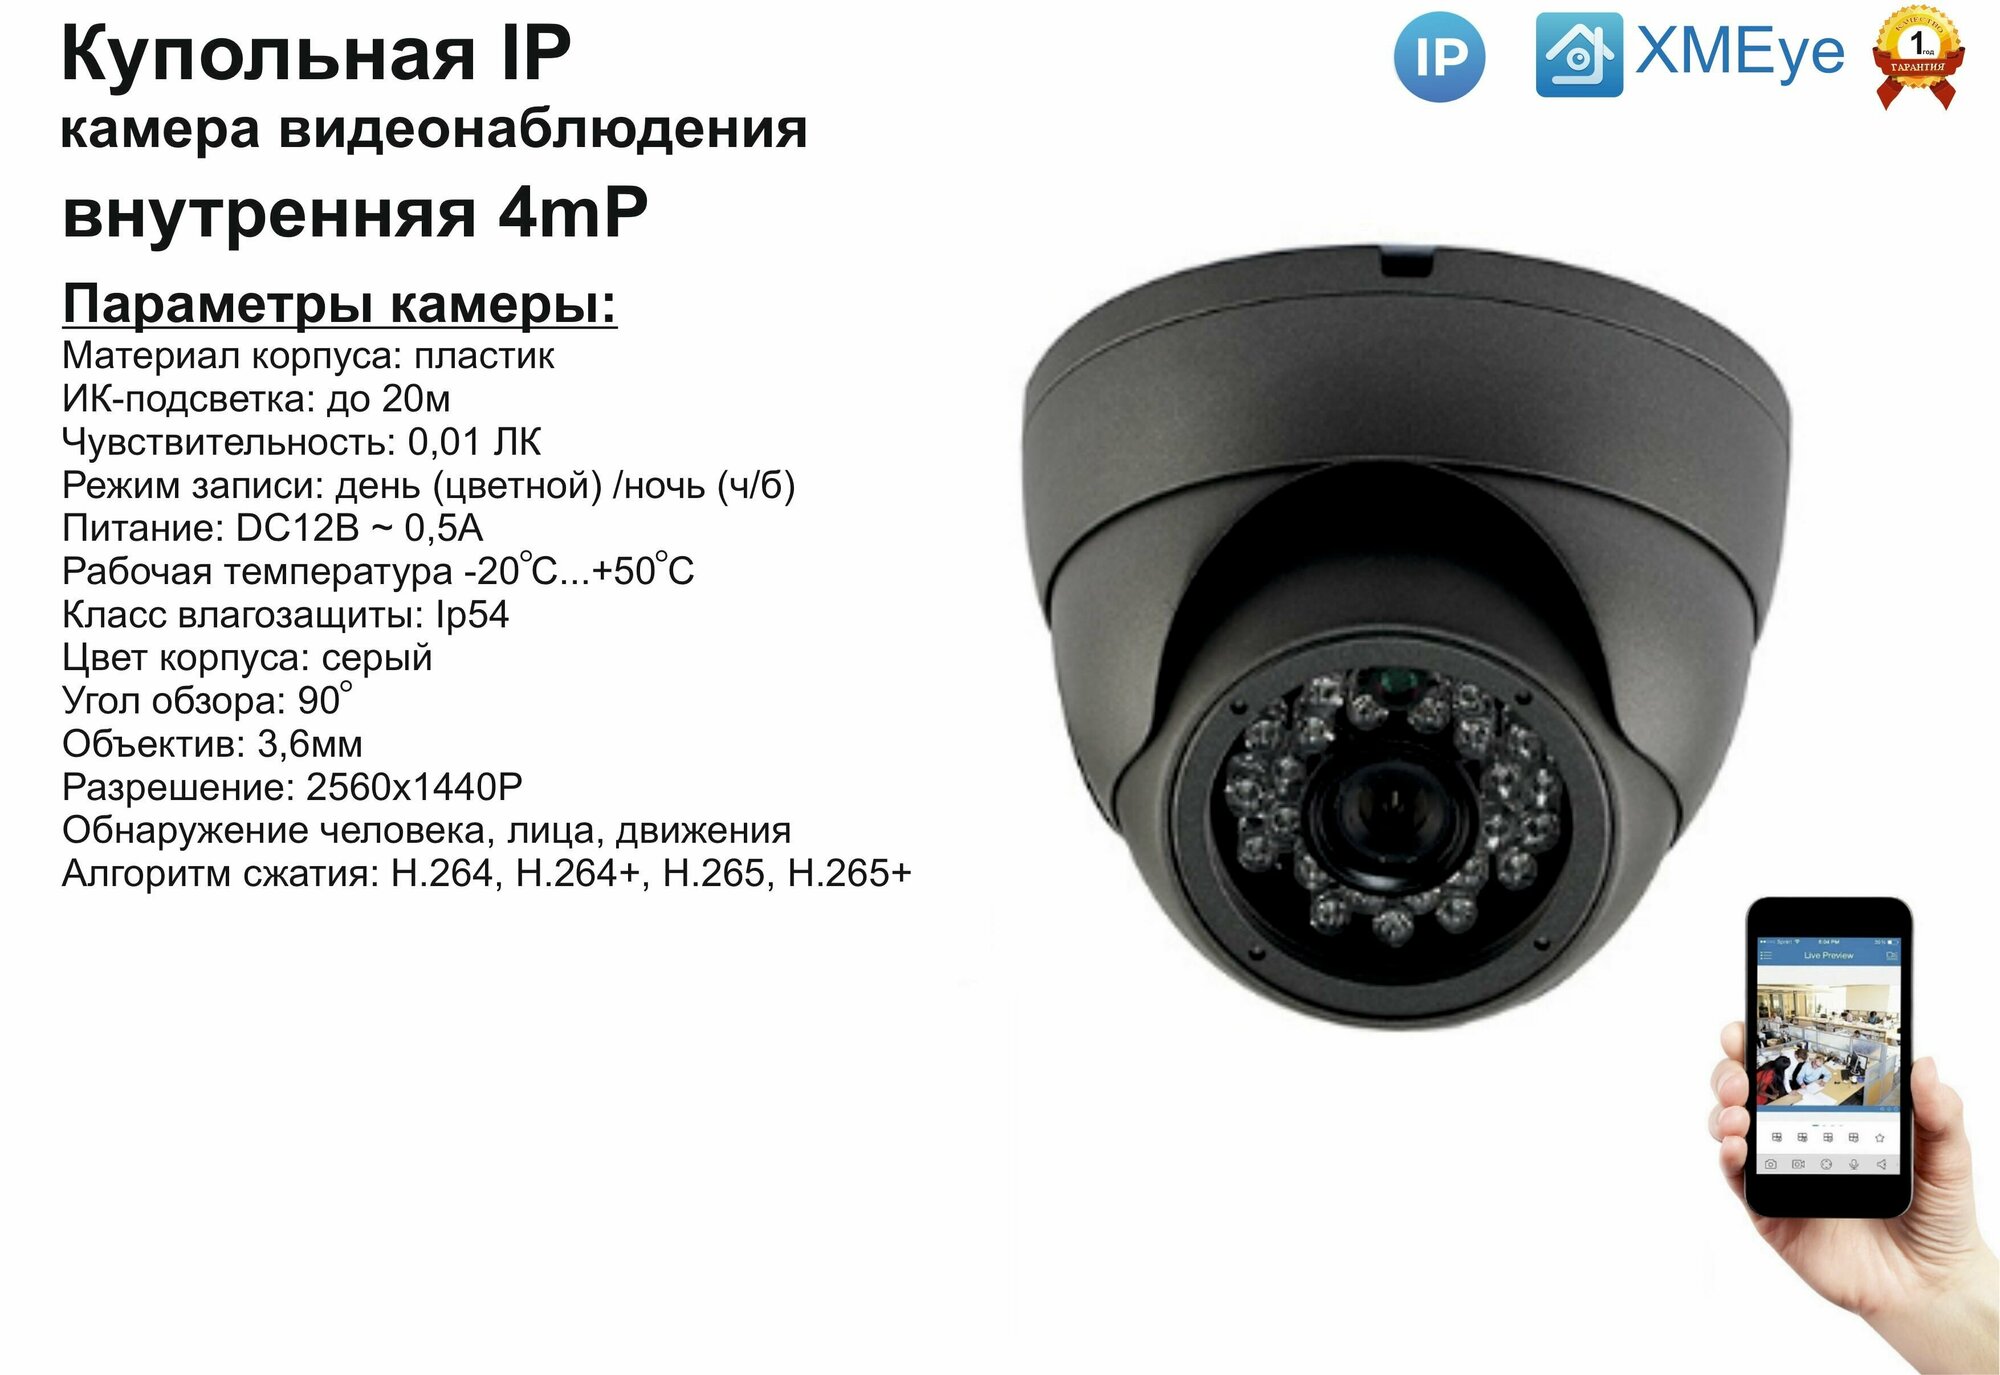 DVS300IP4MP. Внутренняя IP камера 4мП с ИК до 20м.